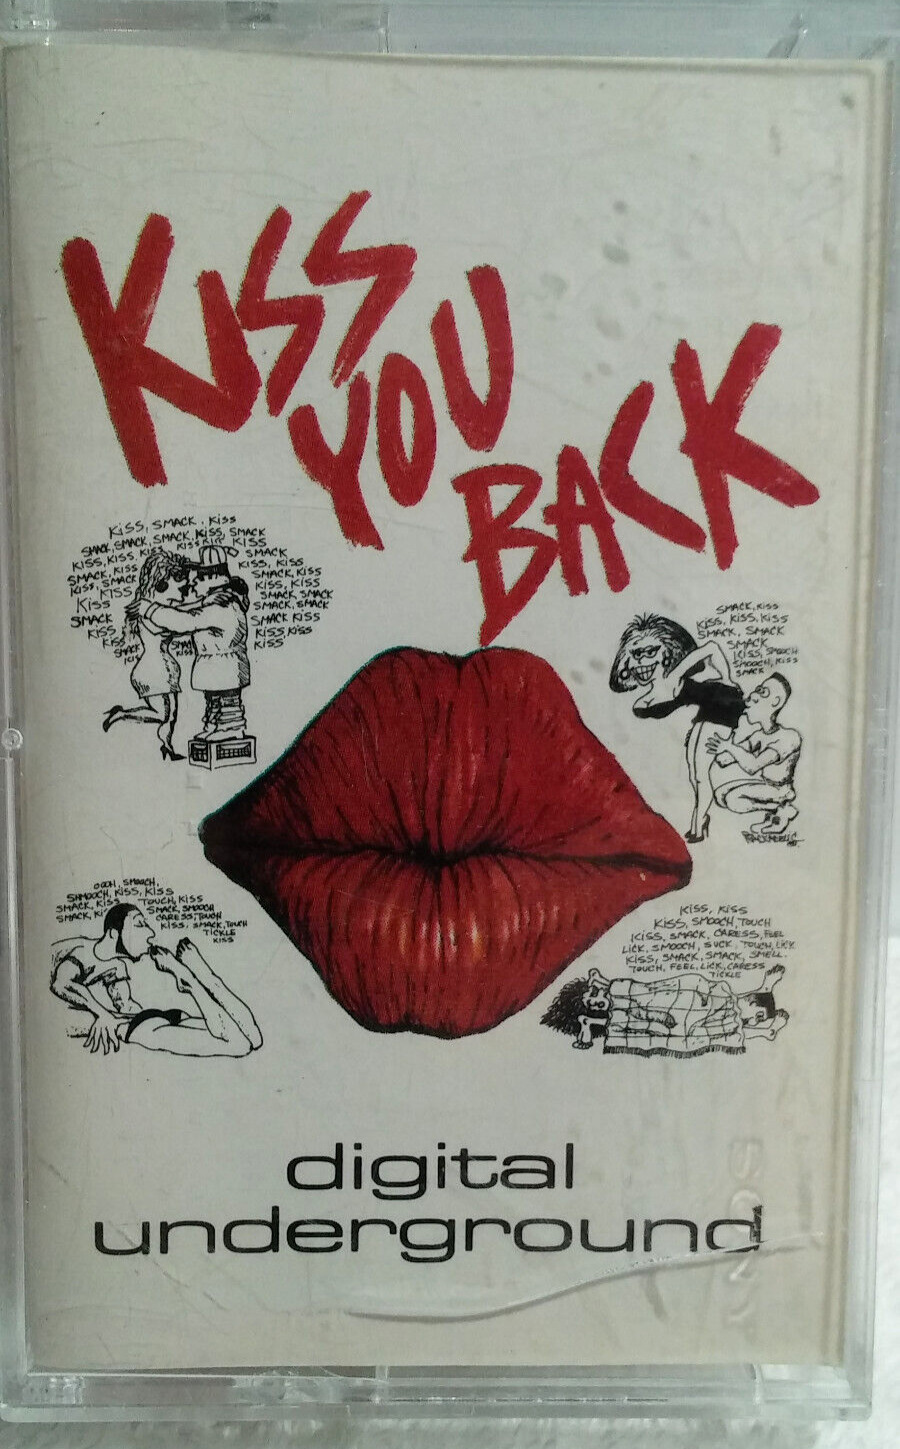 Digital Underground - Kiss You Back (Tommy Boy) Cassette Single